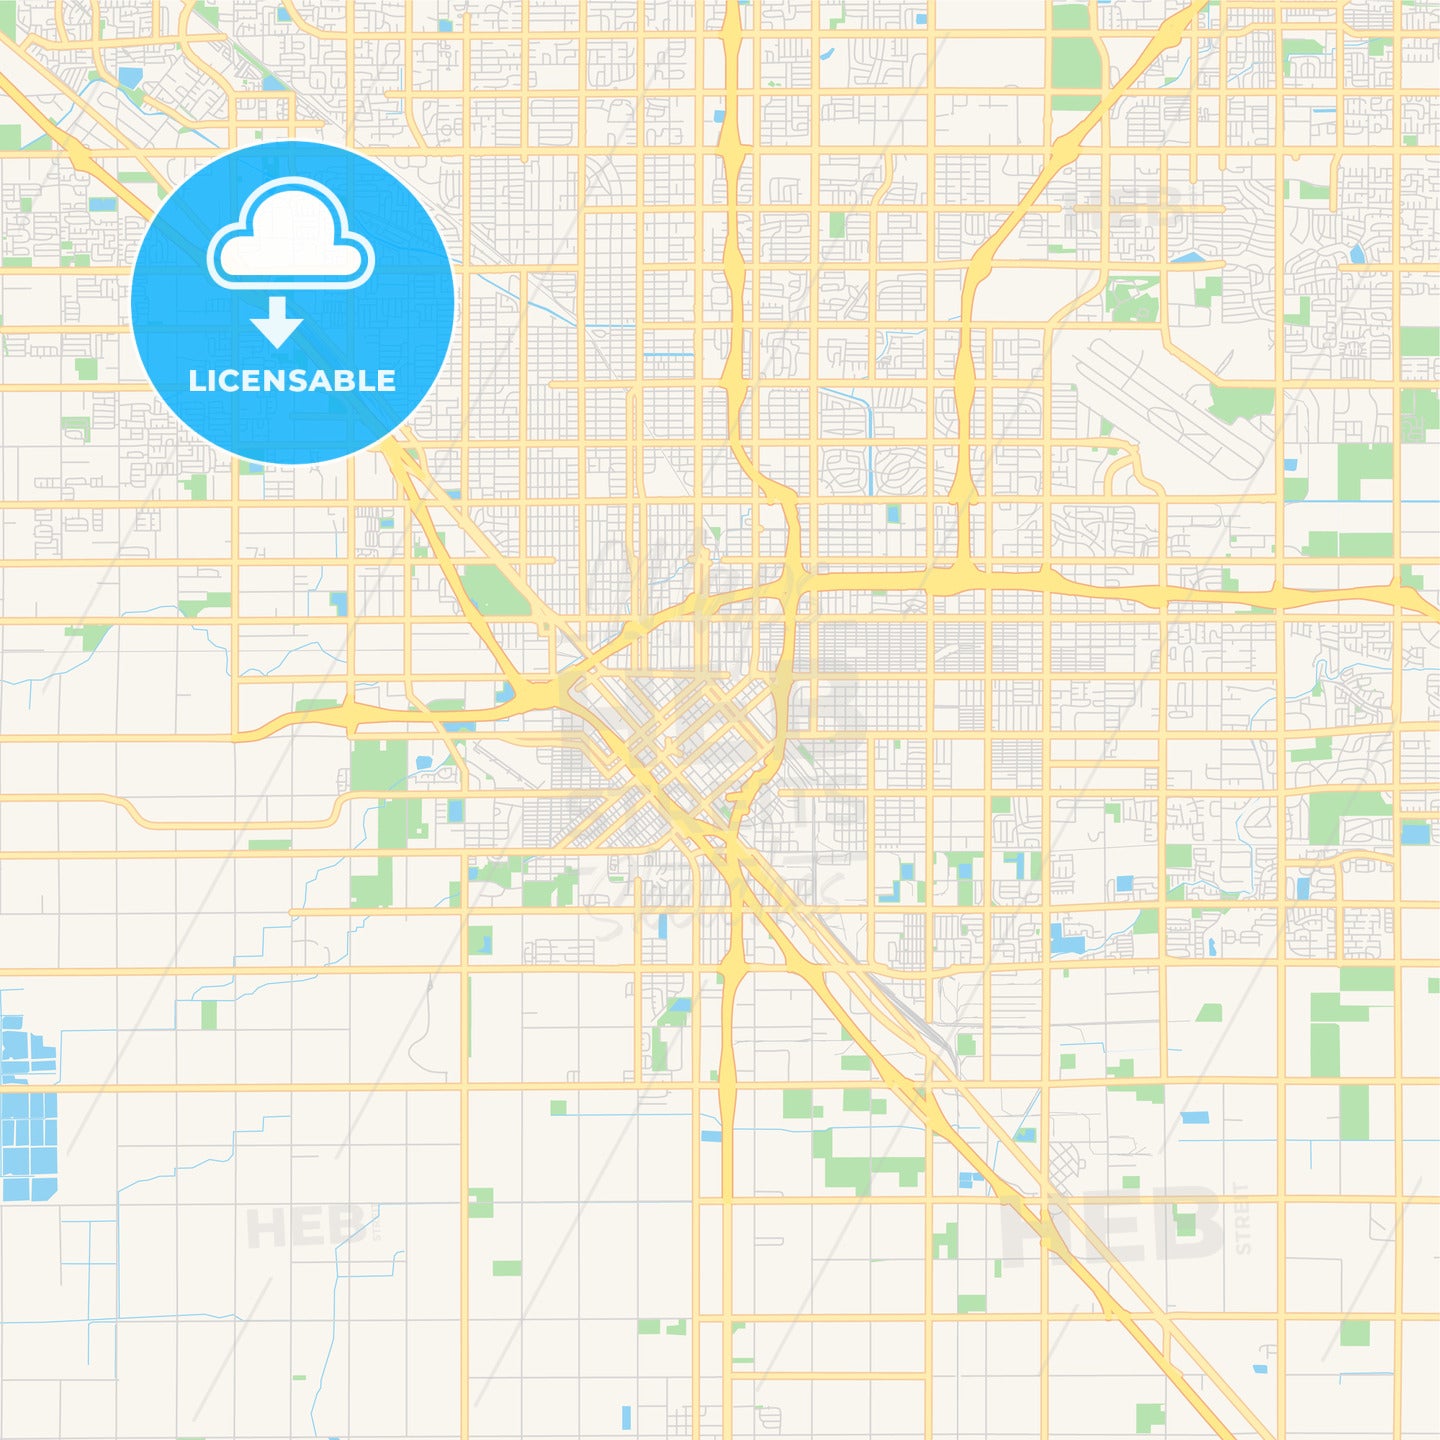 Empty vector map of Fresno, California, USA